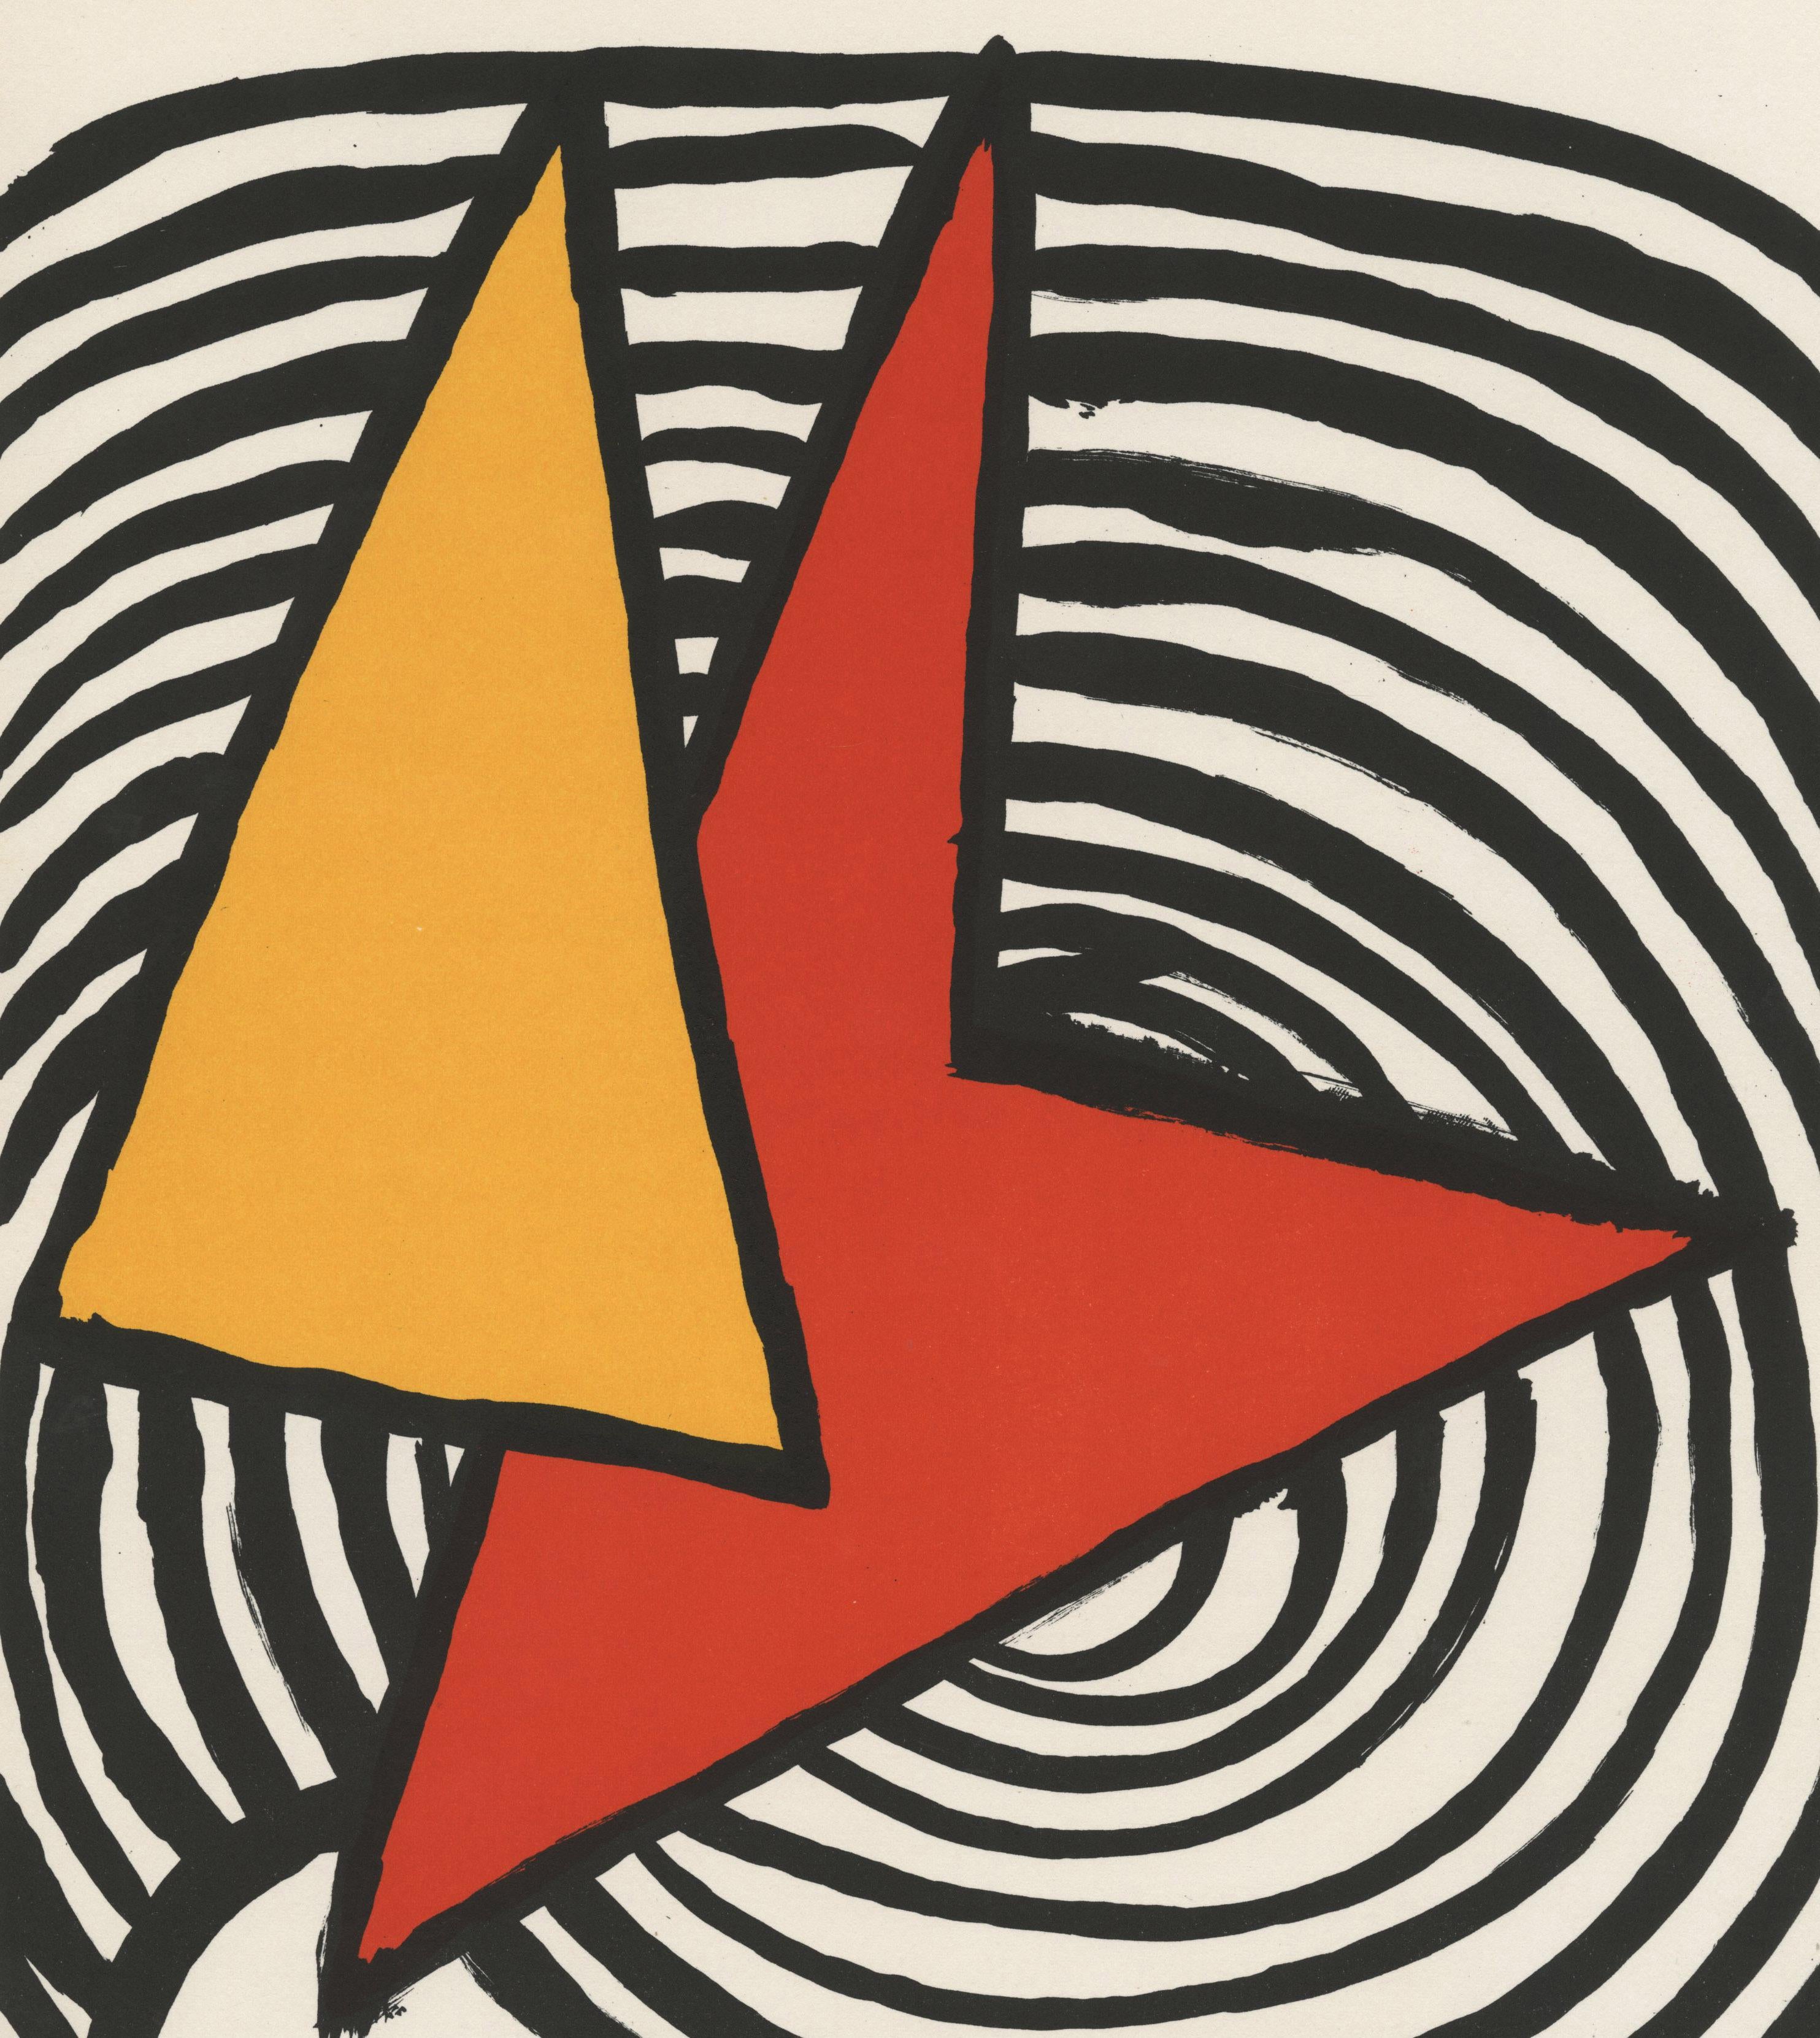 Derriere Le Miroir-Page 9 - Print by Alexander Calder